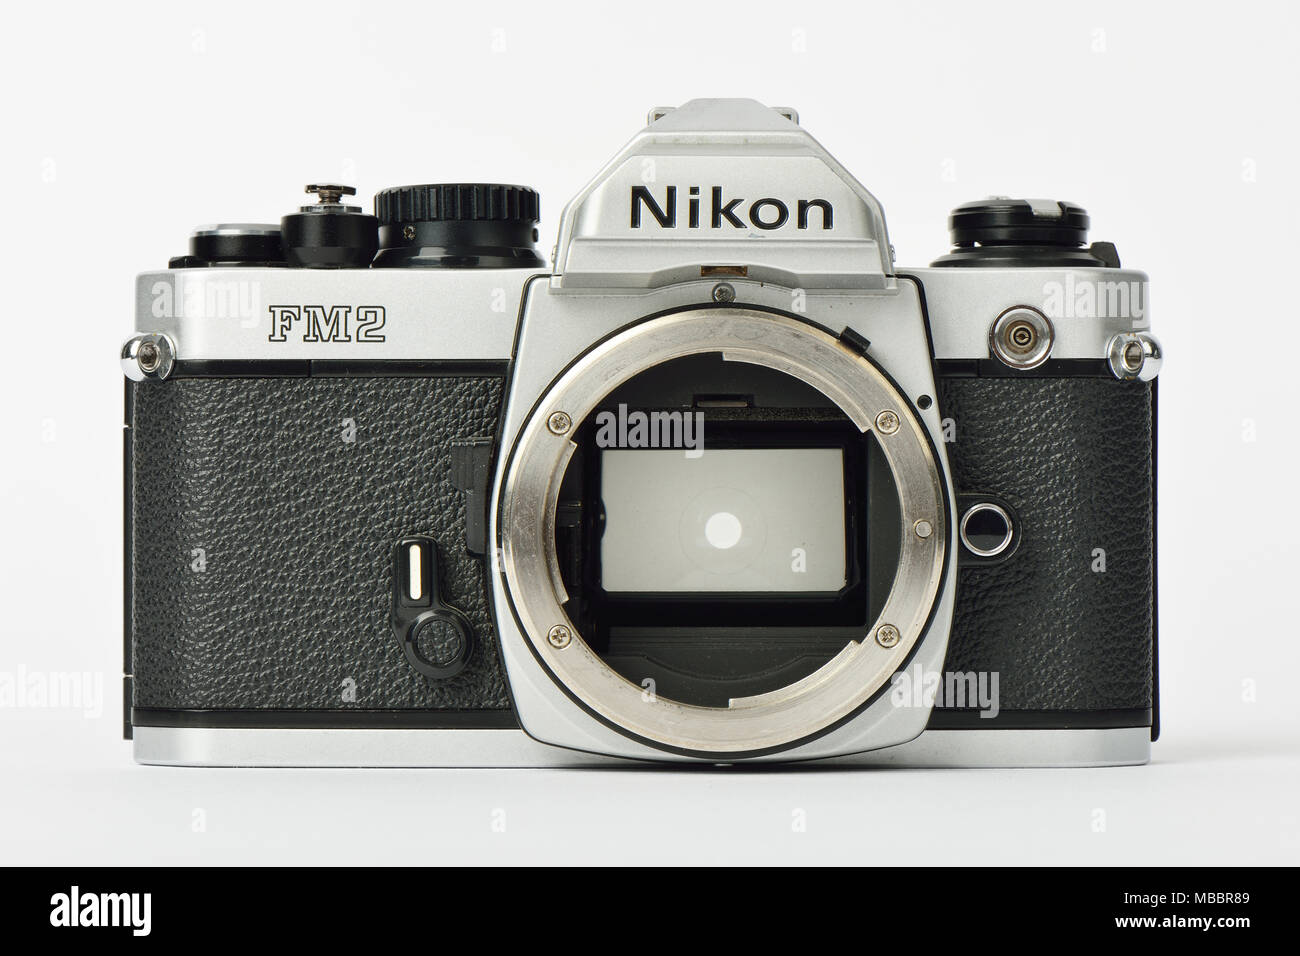 SEOUL, KOREA - April 23 2014: Old film camera Nikon FM2 on a white background Stock Photo